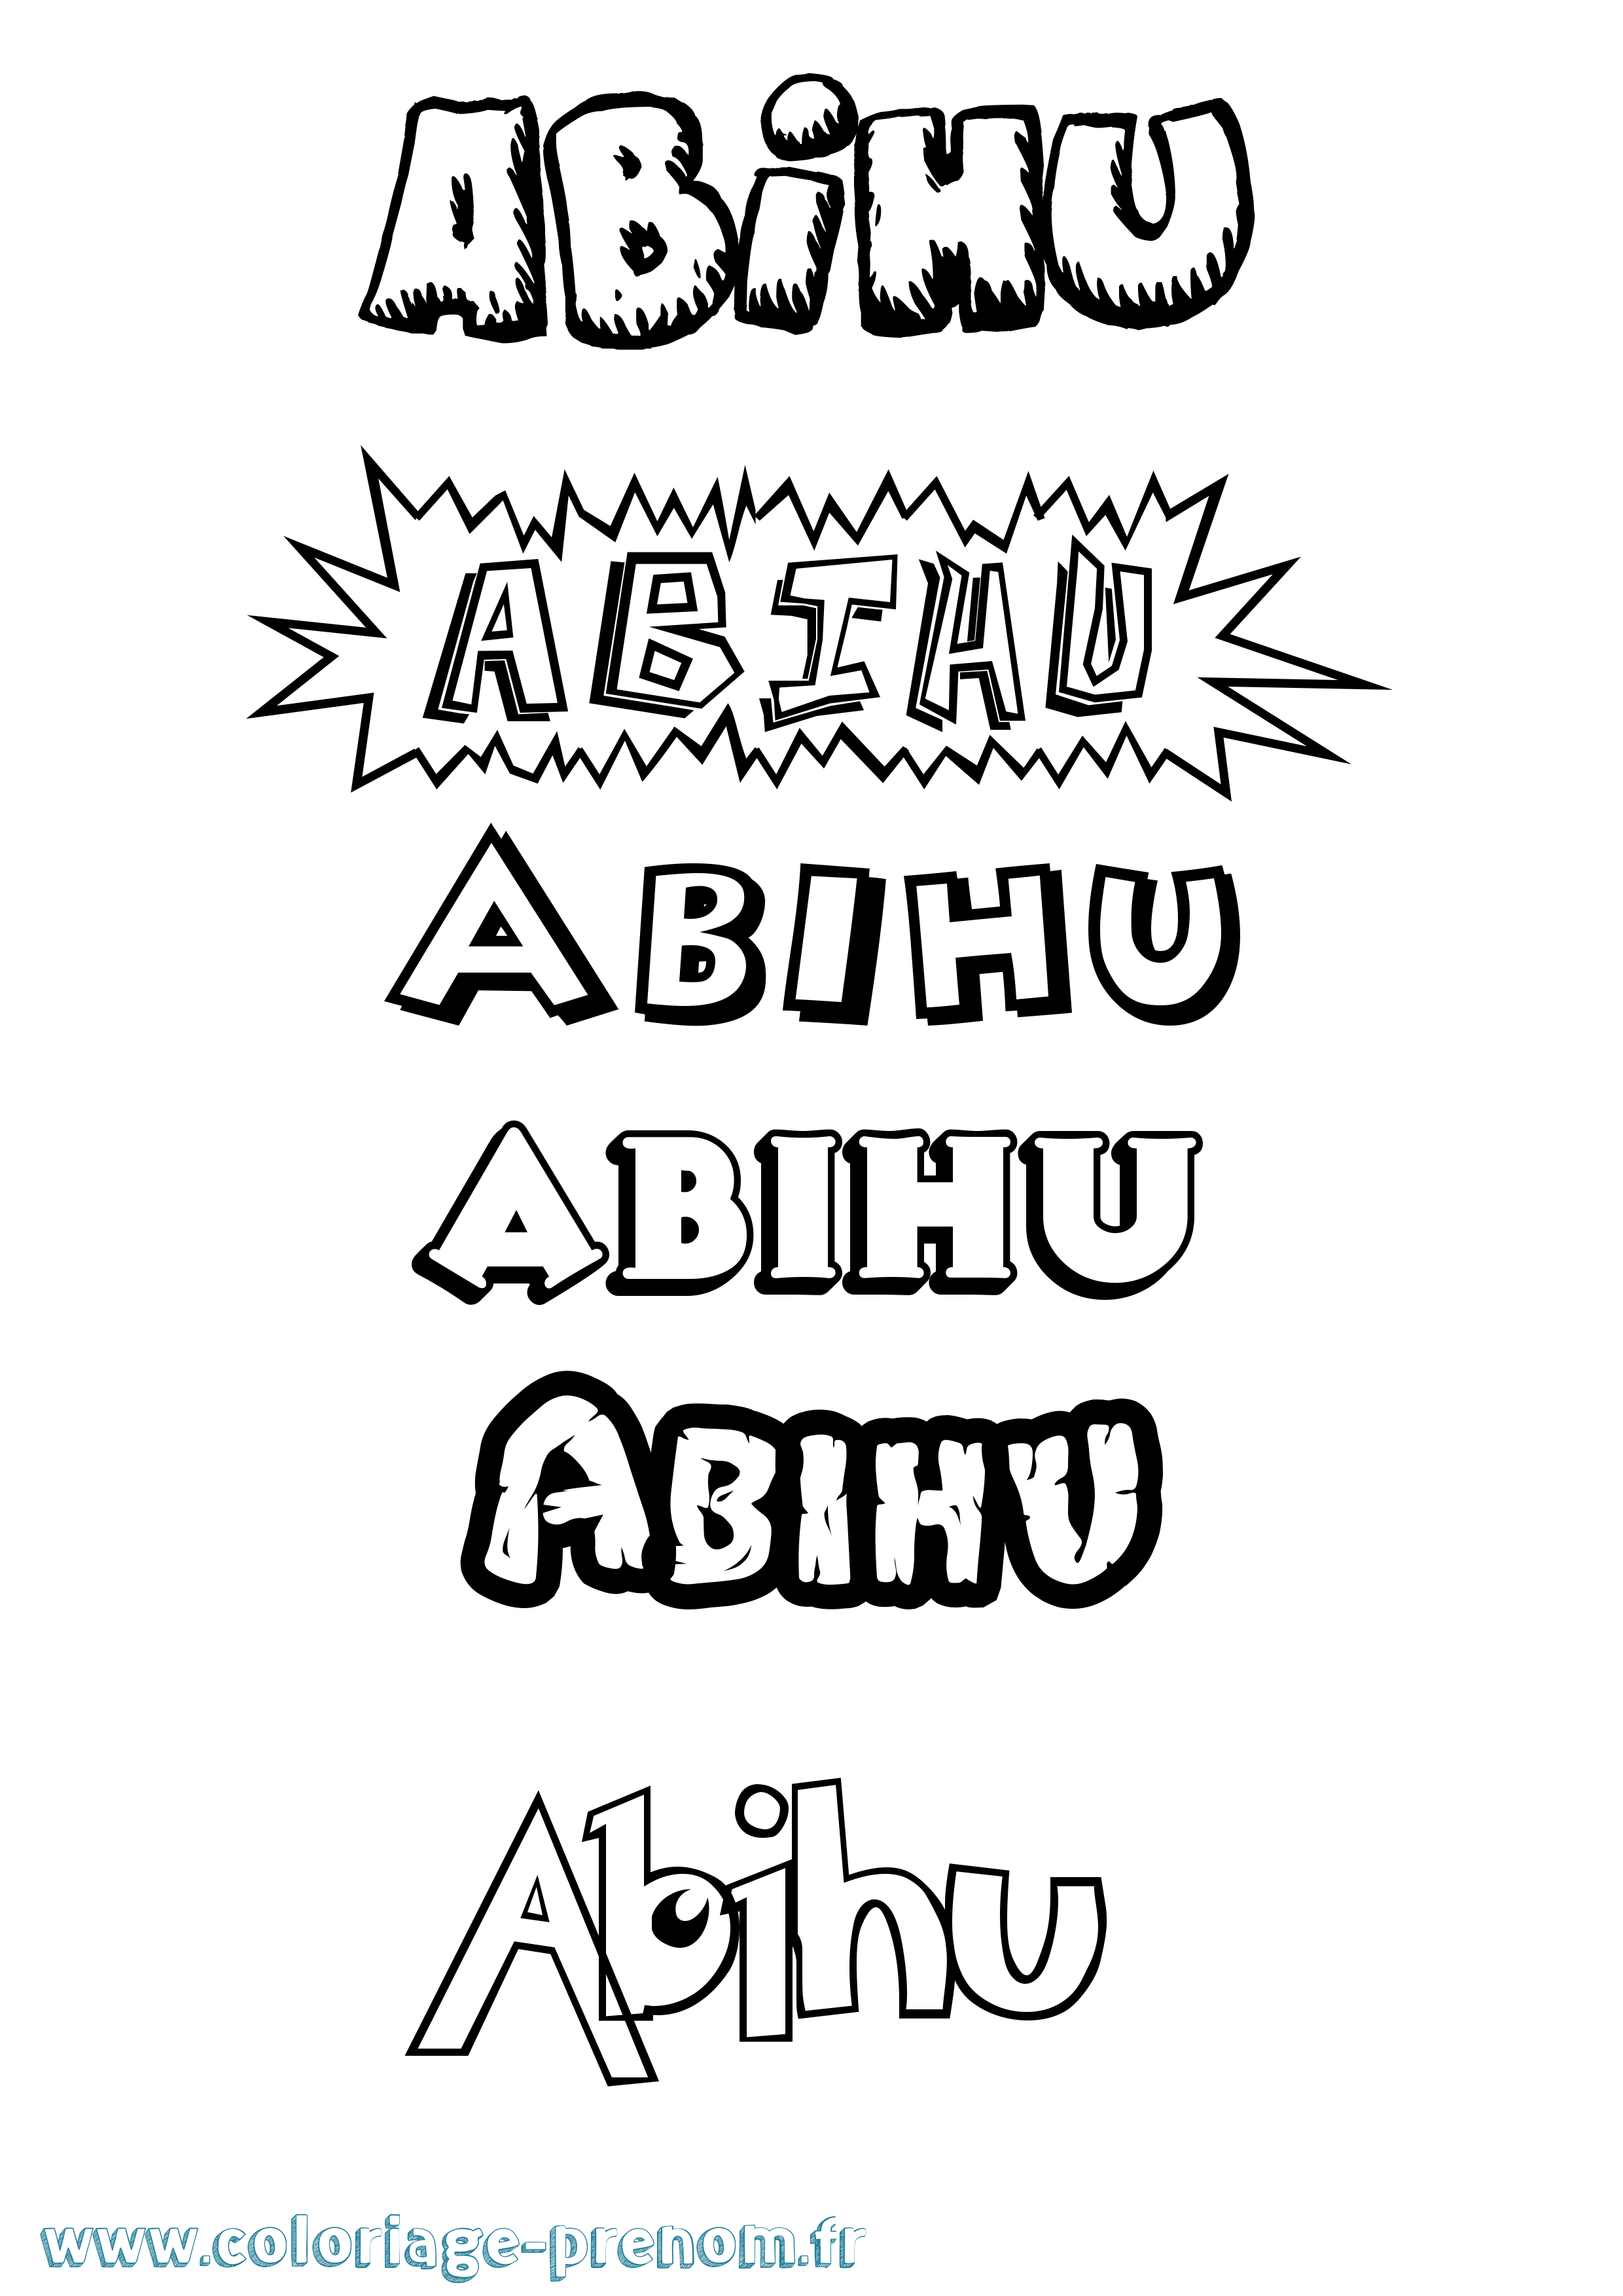 Coloriage prénom Abihu Dessin Animé